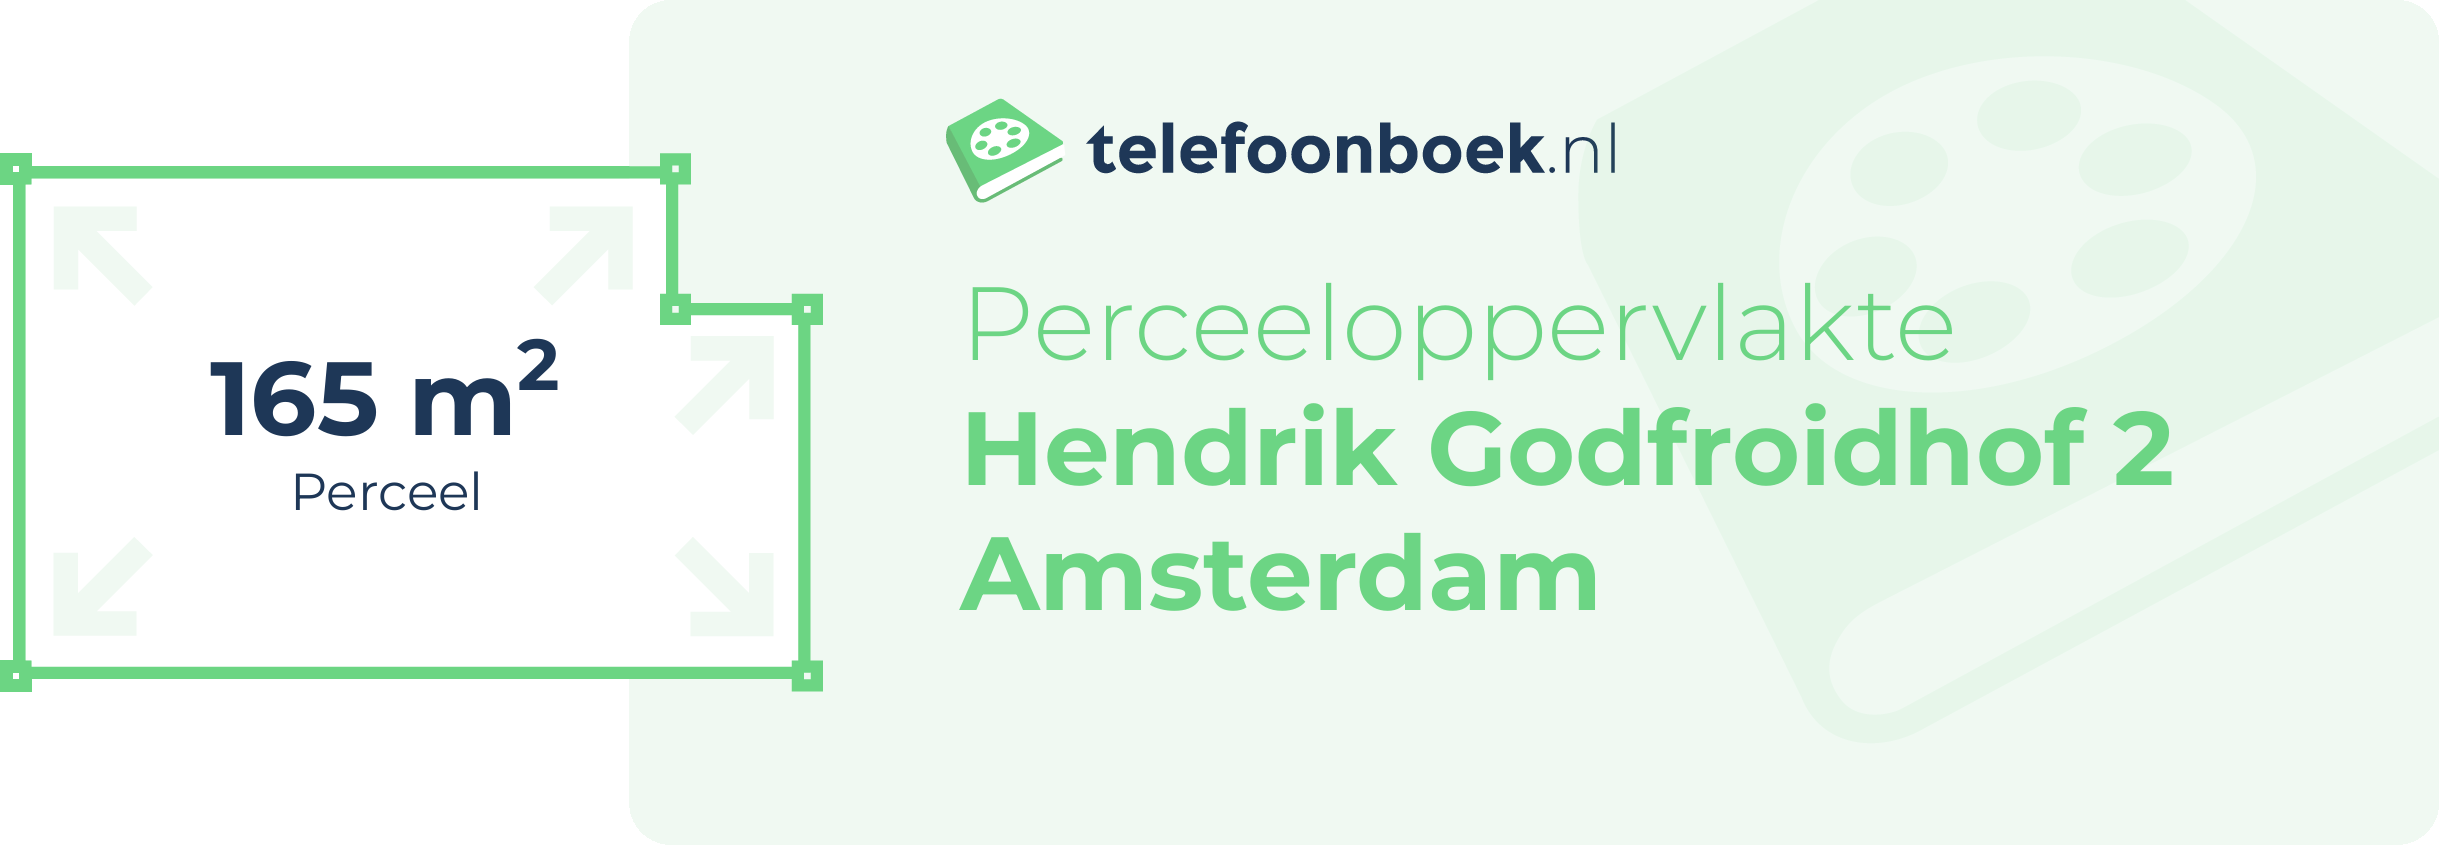 Perceeloppervlakte Hendrik Godfroidhof 2 Amsterdam